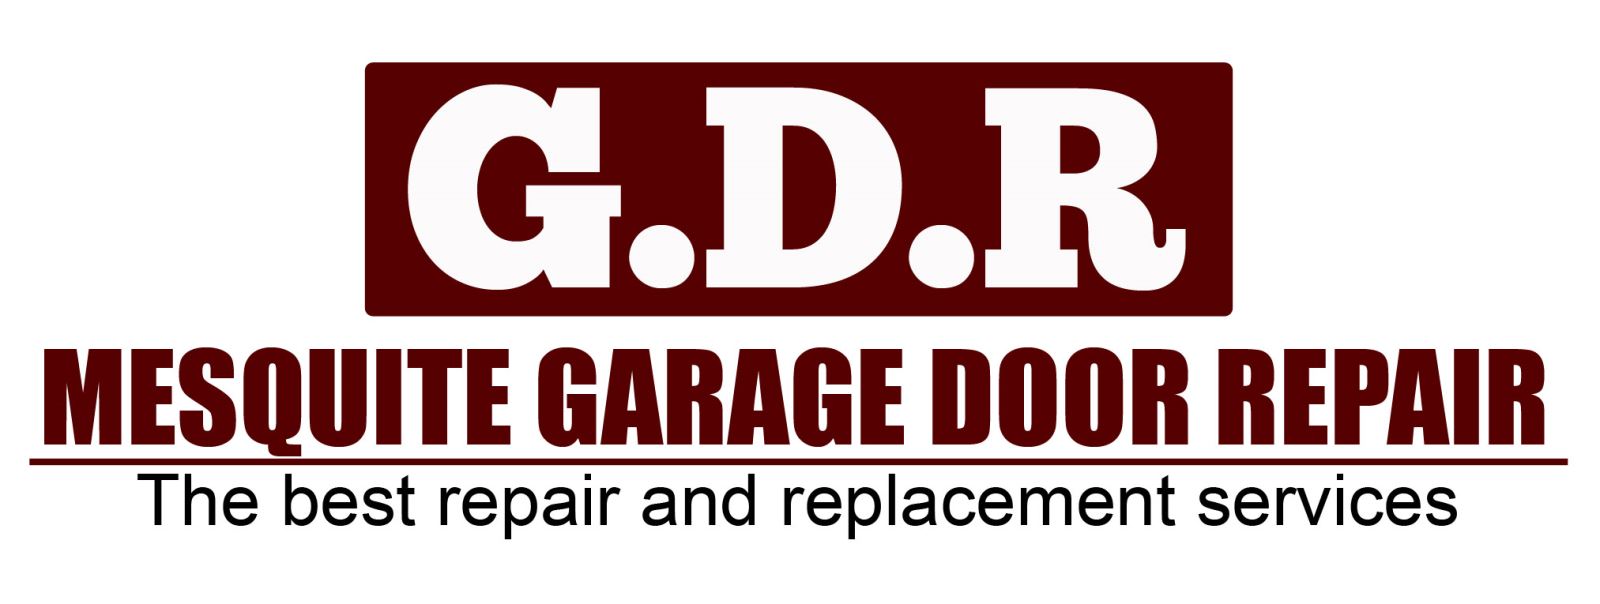 Garage Door Repair Mesquite,TX